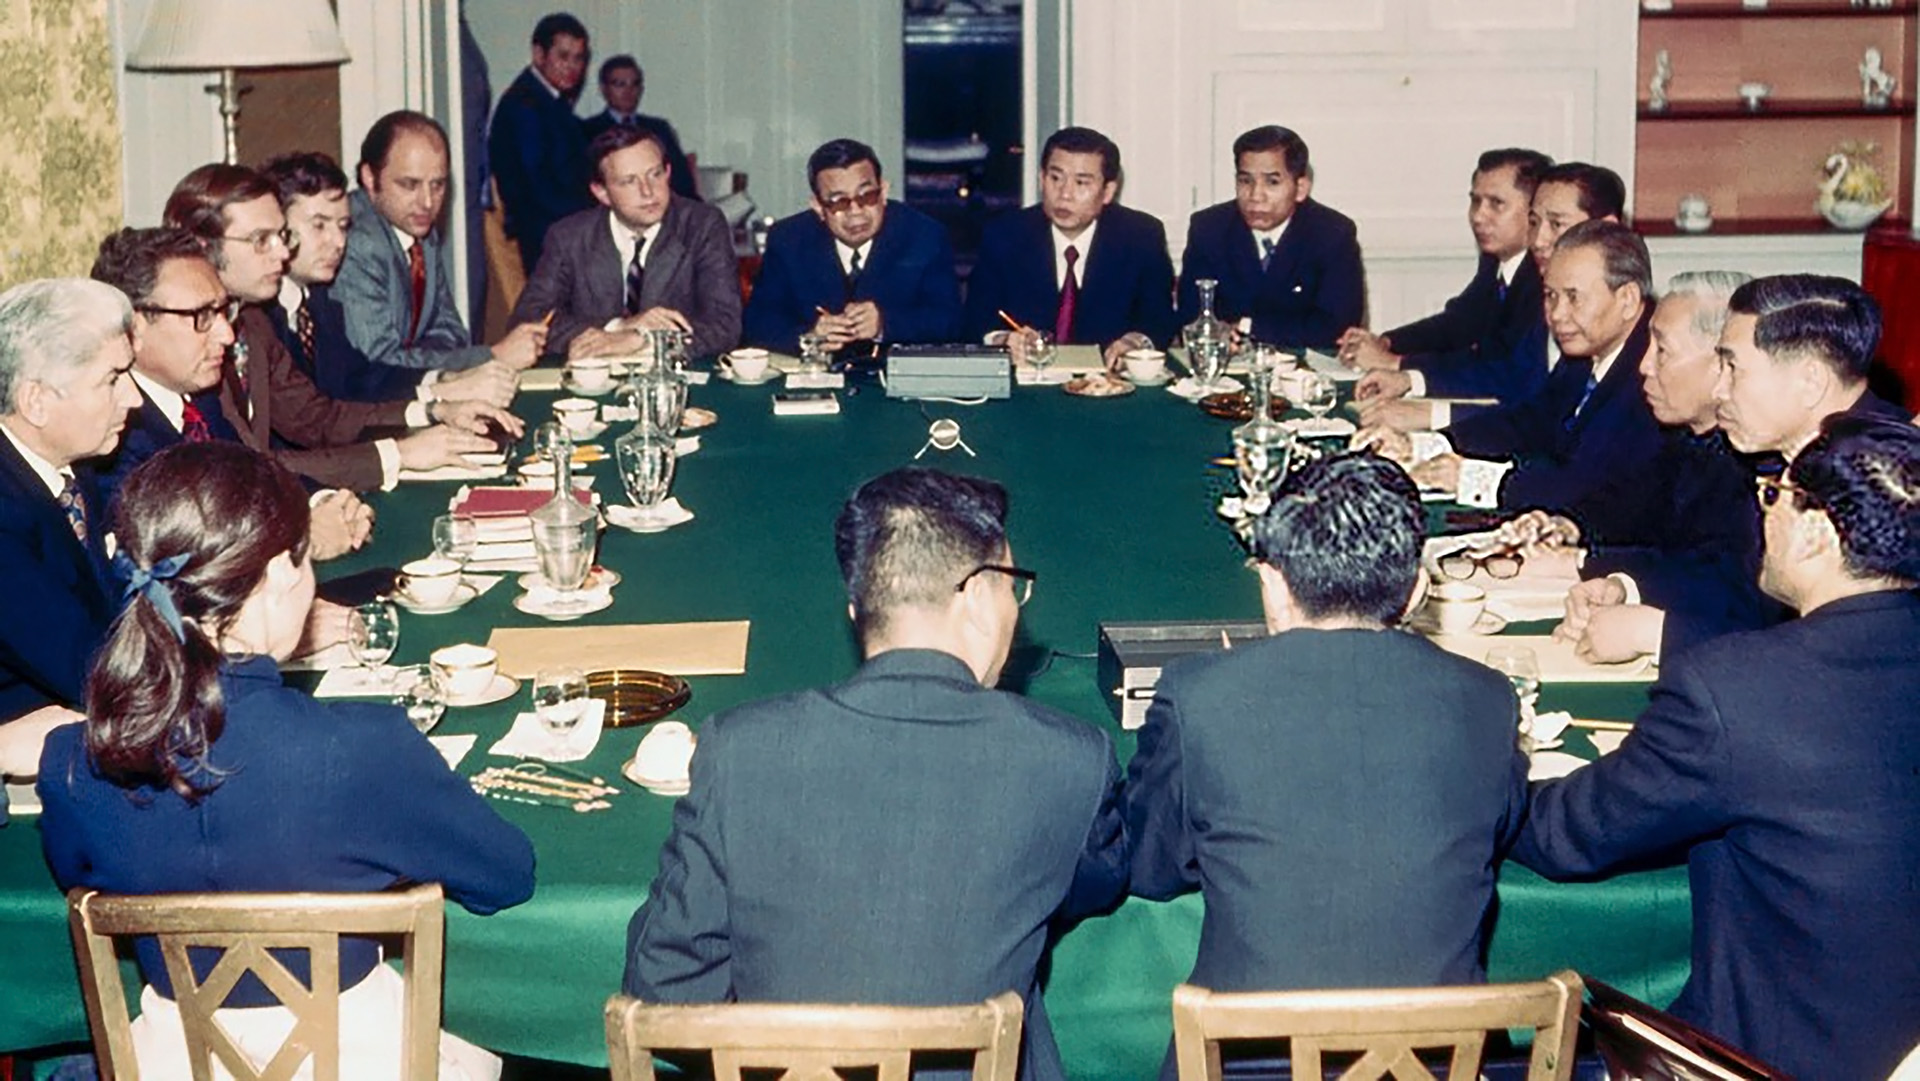 Hiệp định Paris trong ký ức nhà ngoại giao Phạm Ngạc